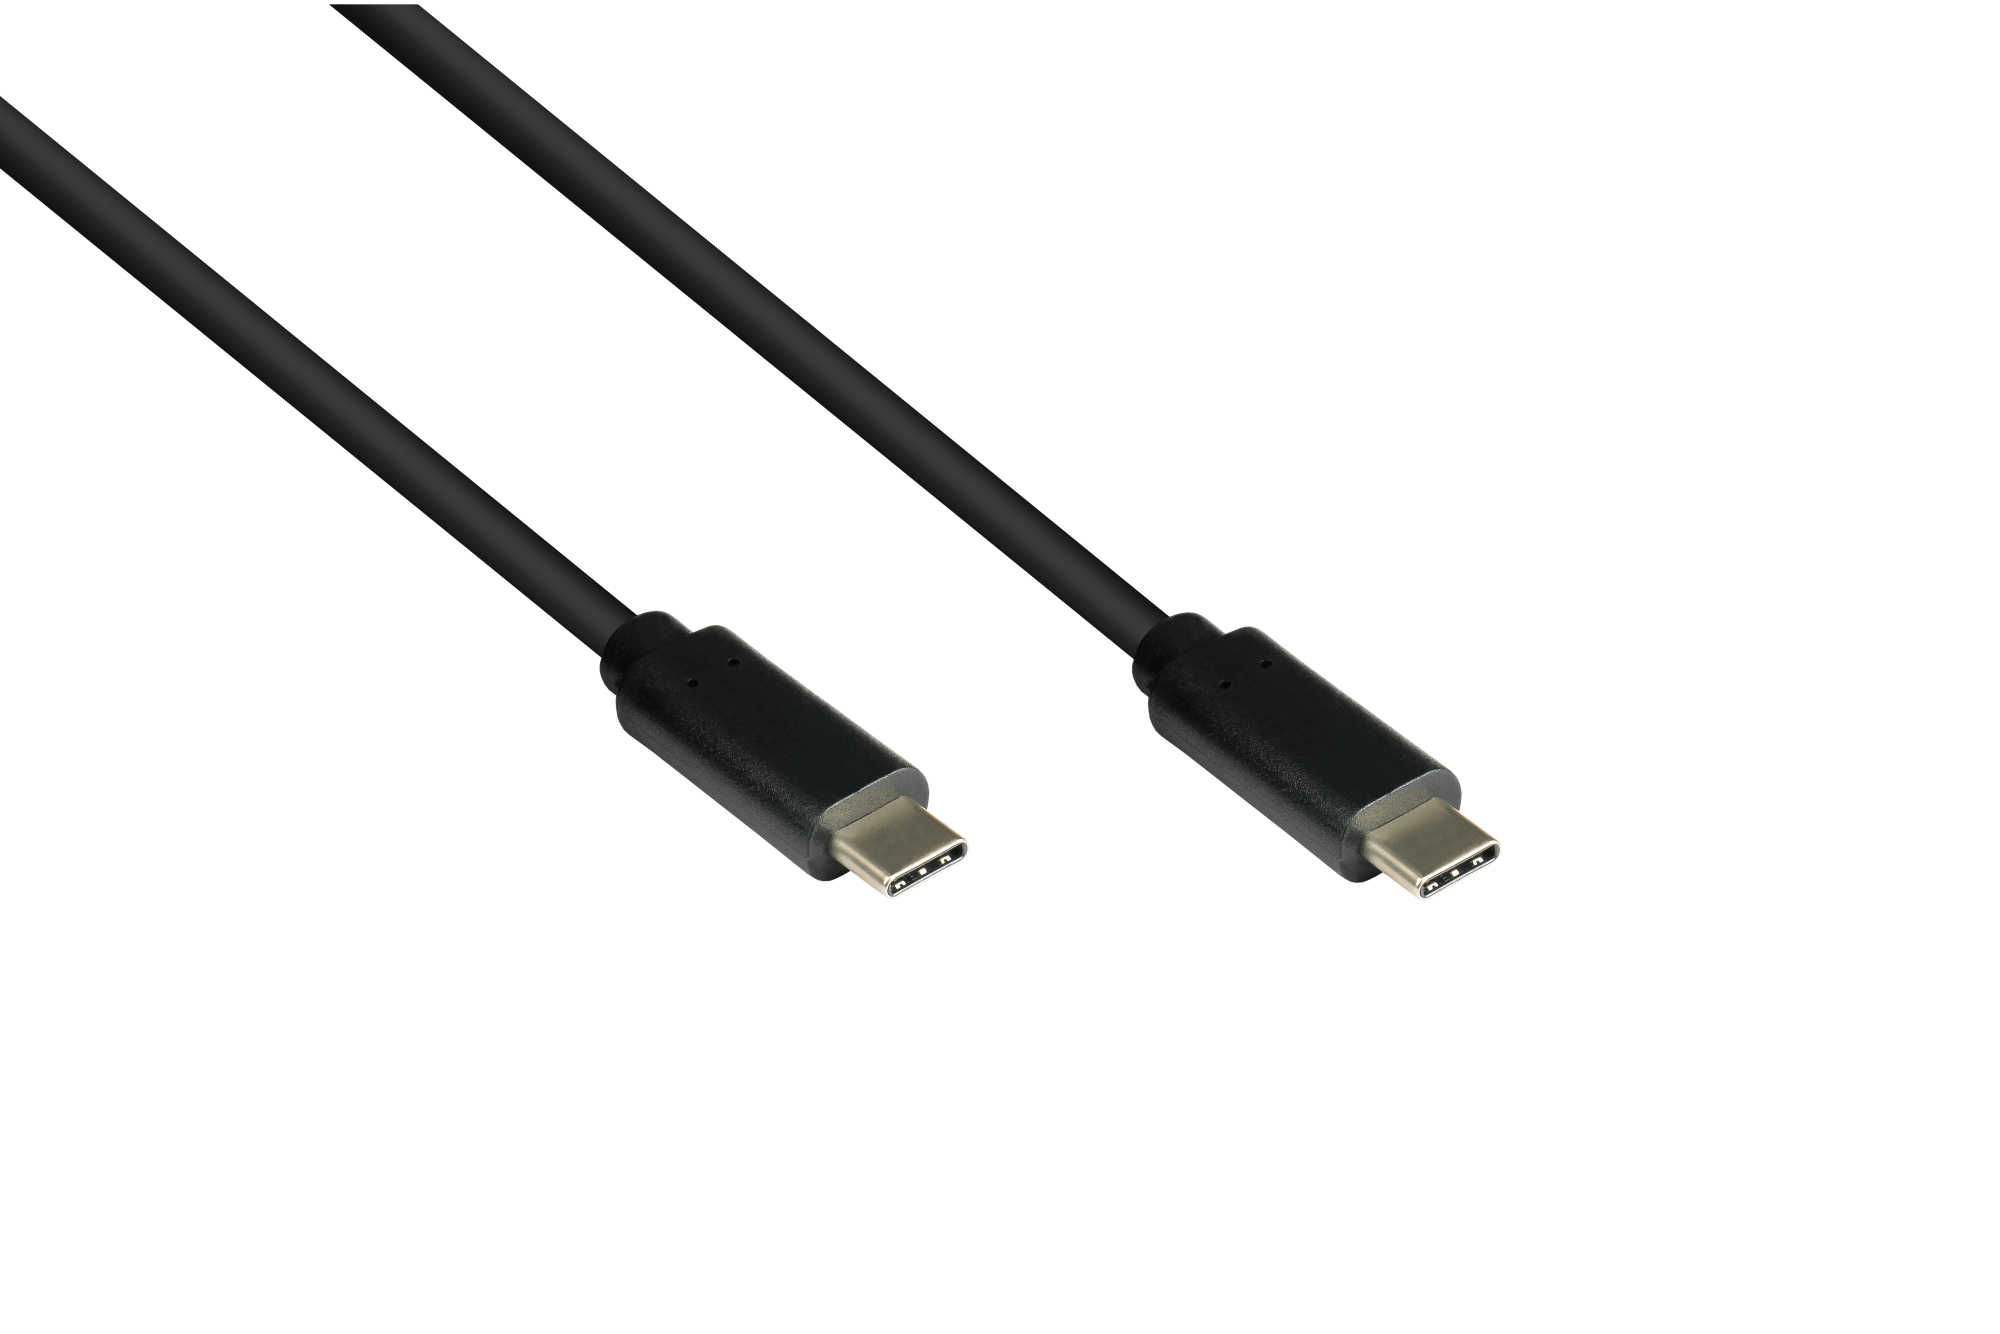 Lade- und Datenkabel USB 3.1 (Gen.1), USB-C™ Stecker beidseitig, CU, schwarz, 2m, Good Connections®